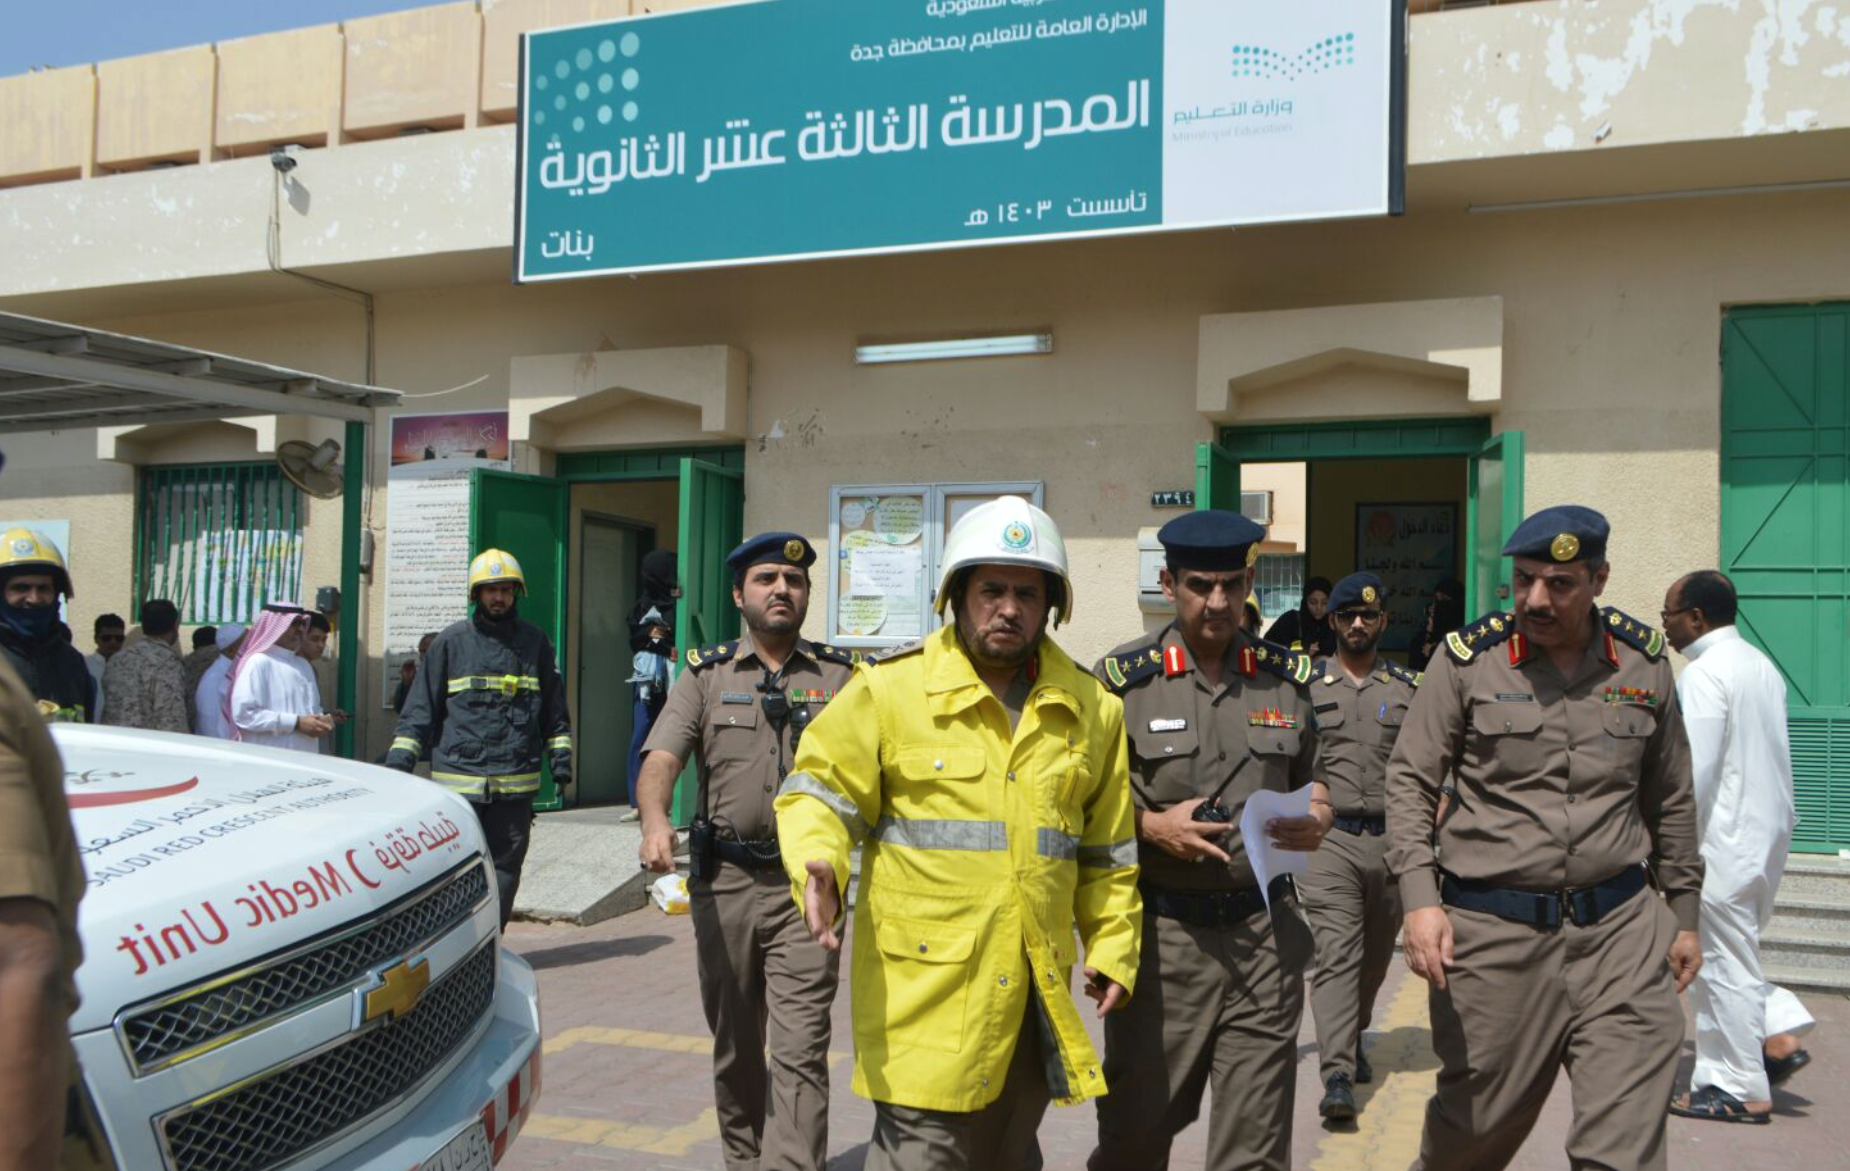 بالصور.. إصابة 24 طالبة وإخلاء مدرسة بنات في #جدة بسبب “الجرس”